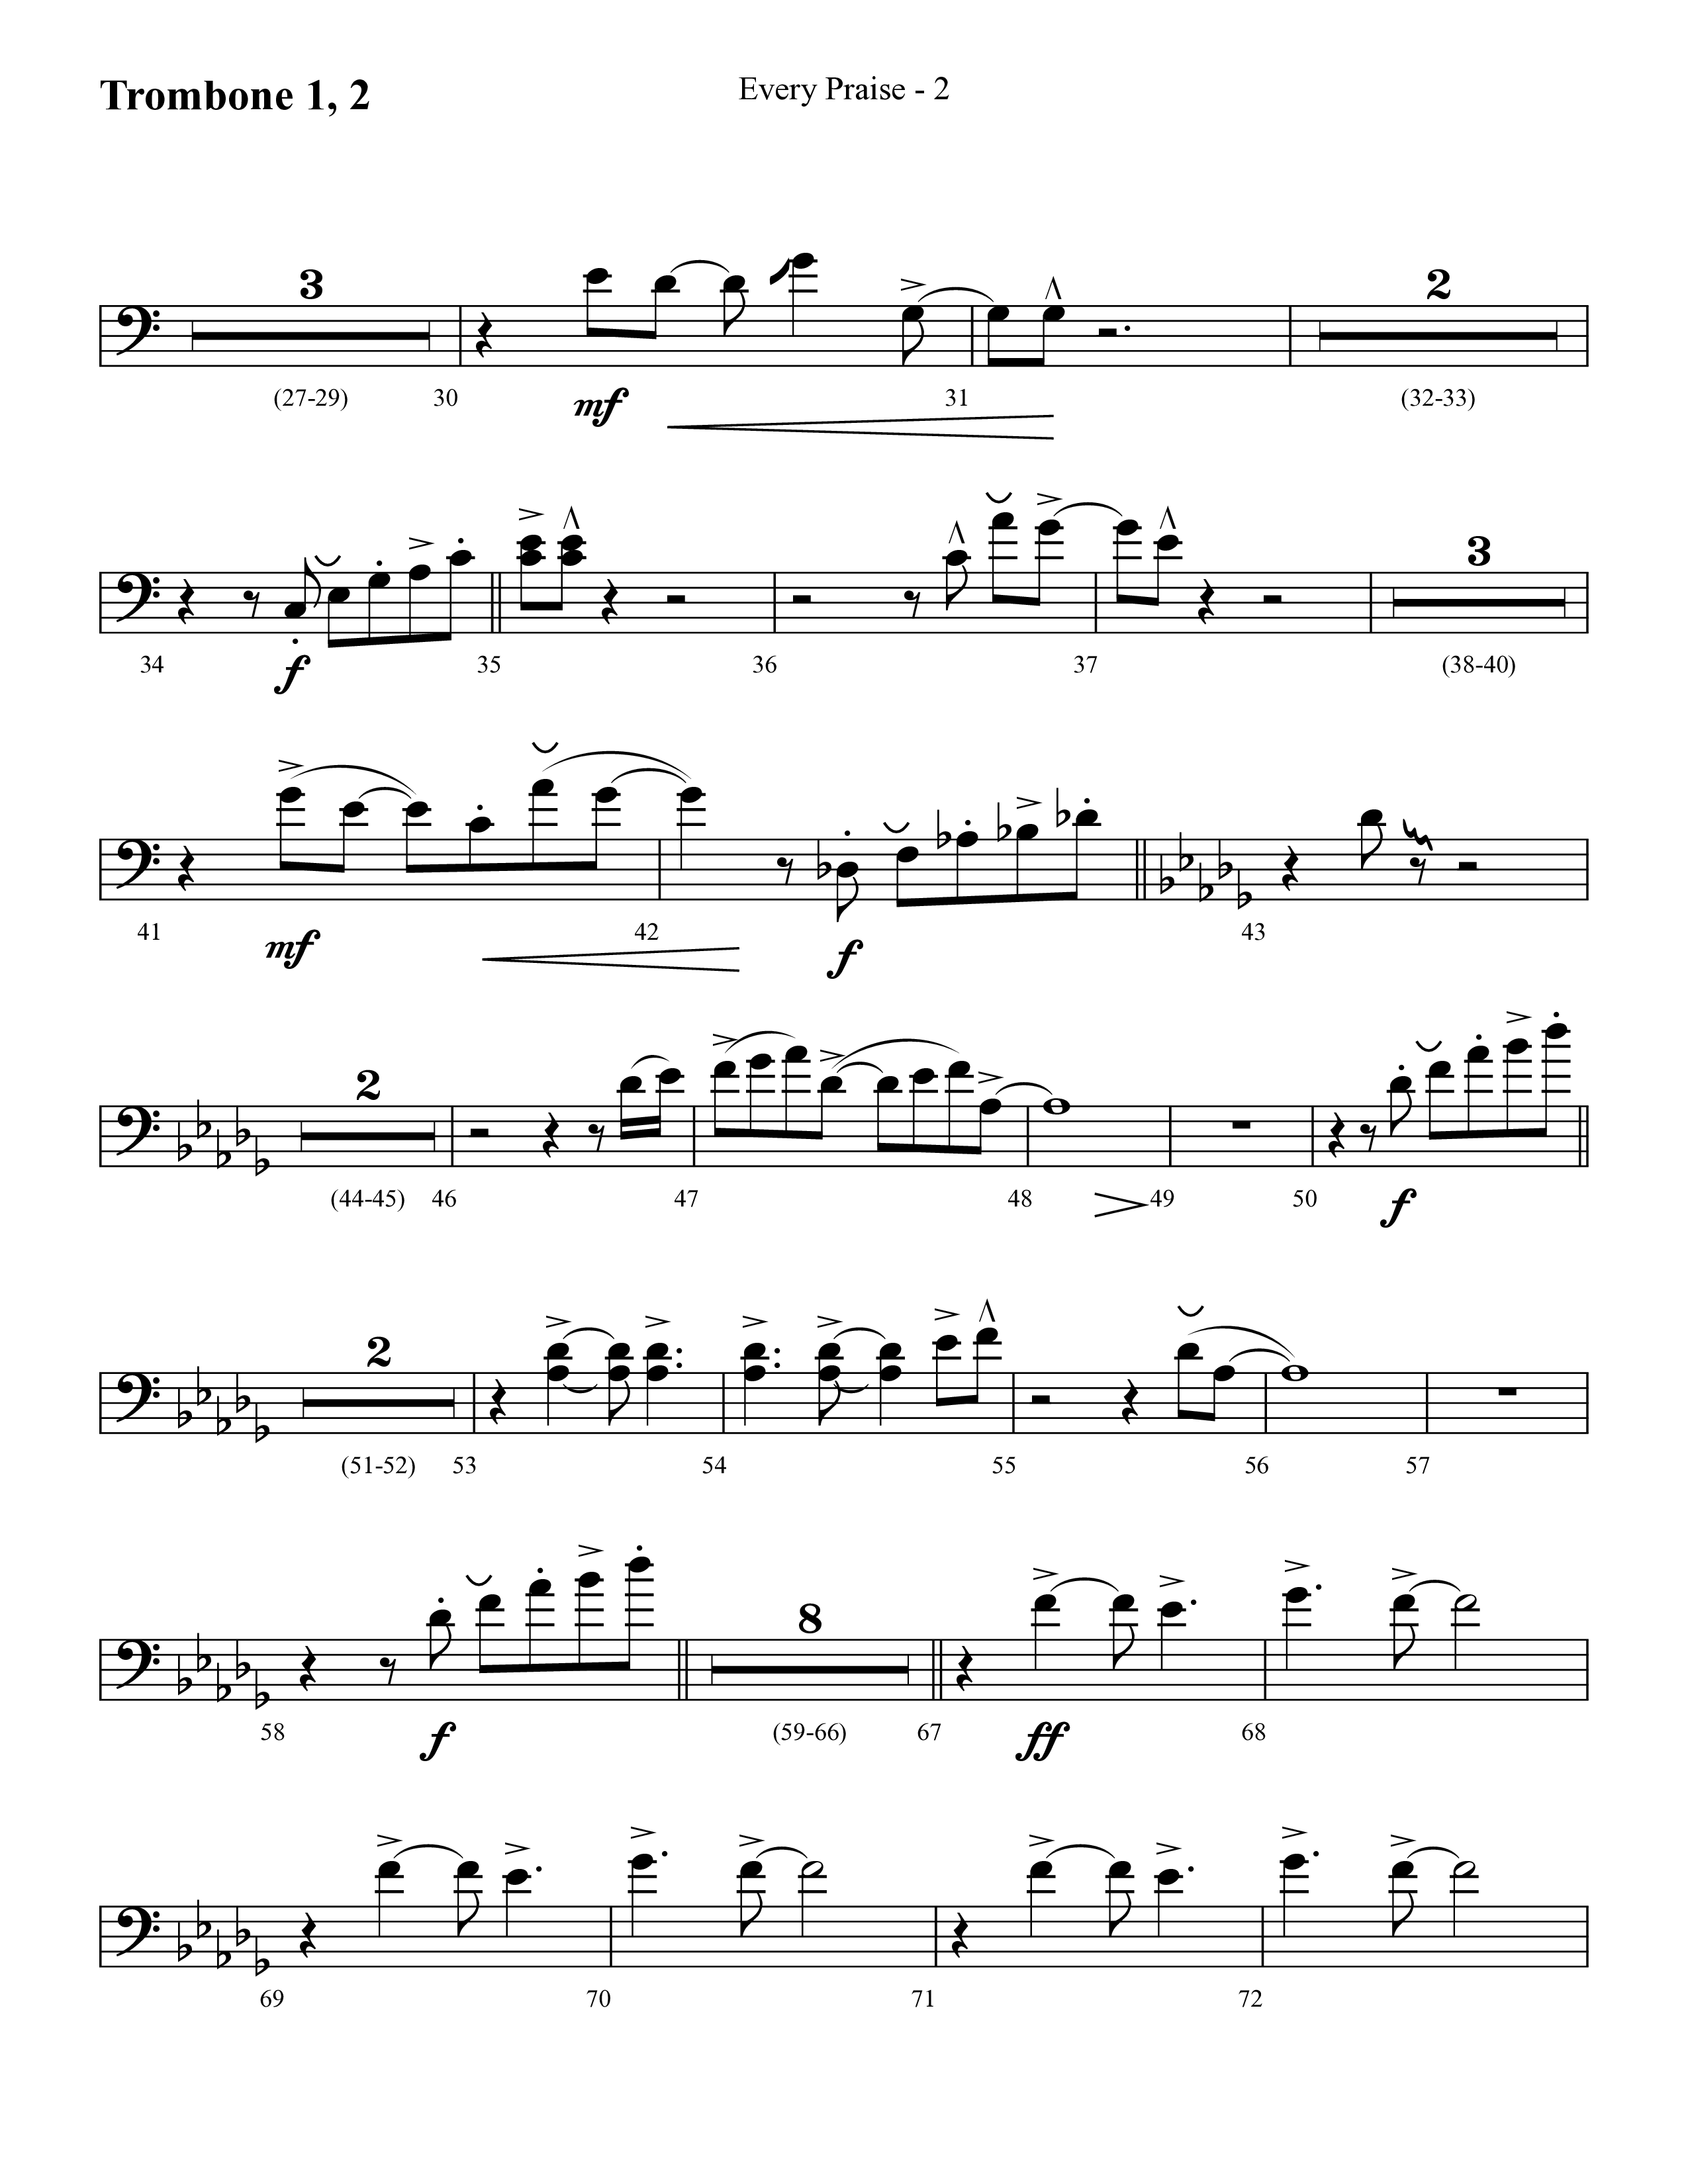 Every Praise (Choral Anthem SATB) Trombone 1/2 (Lifeway Choral / Arr. Cliff Duren)